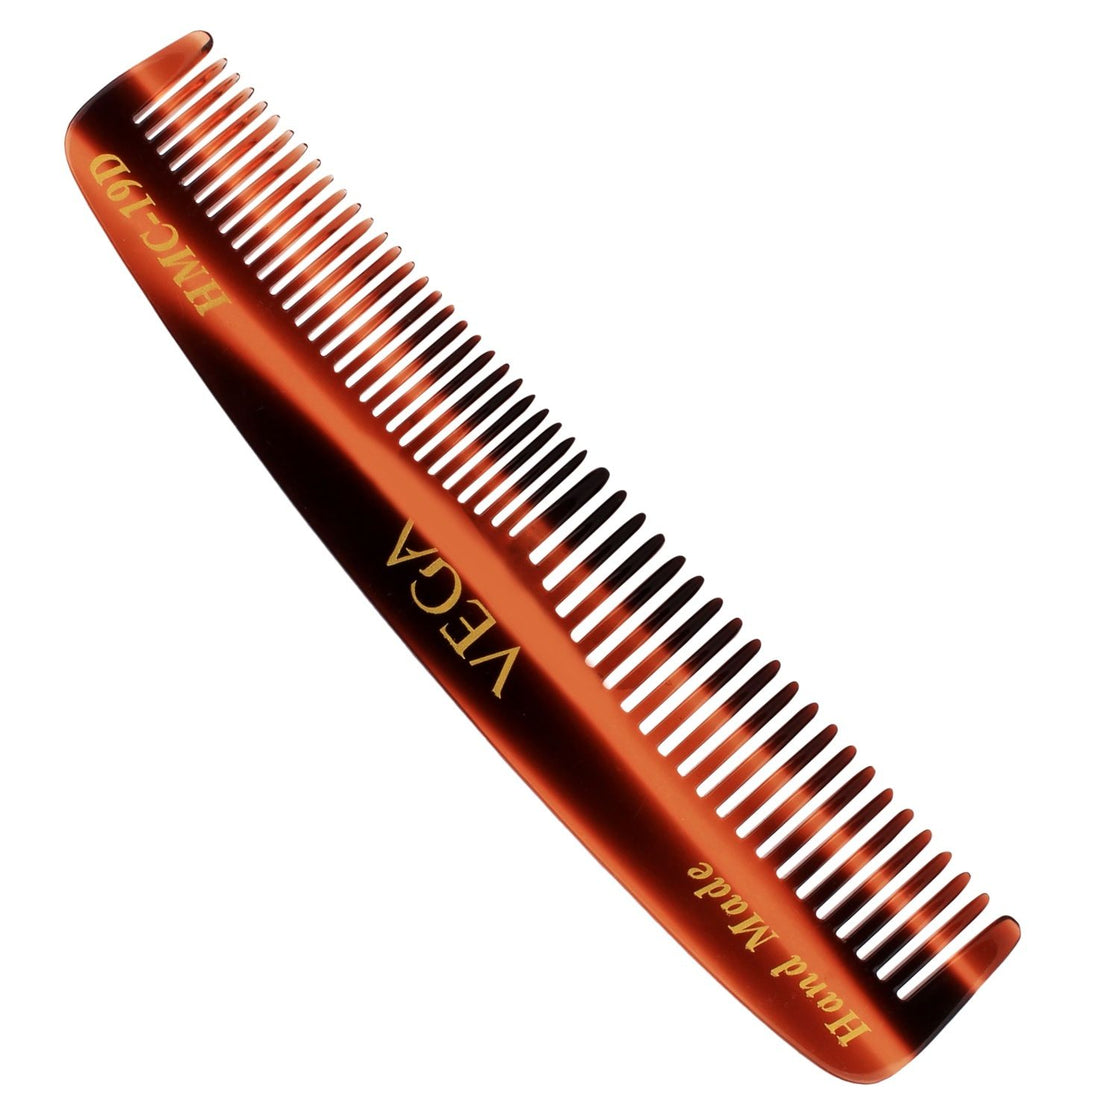 Vega Handcrafted Comb (Hmc-19 D)